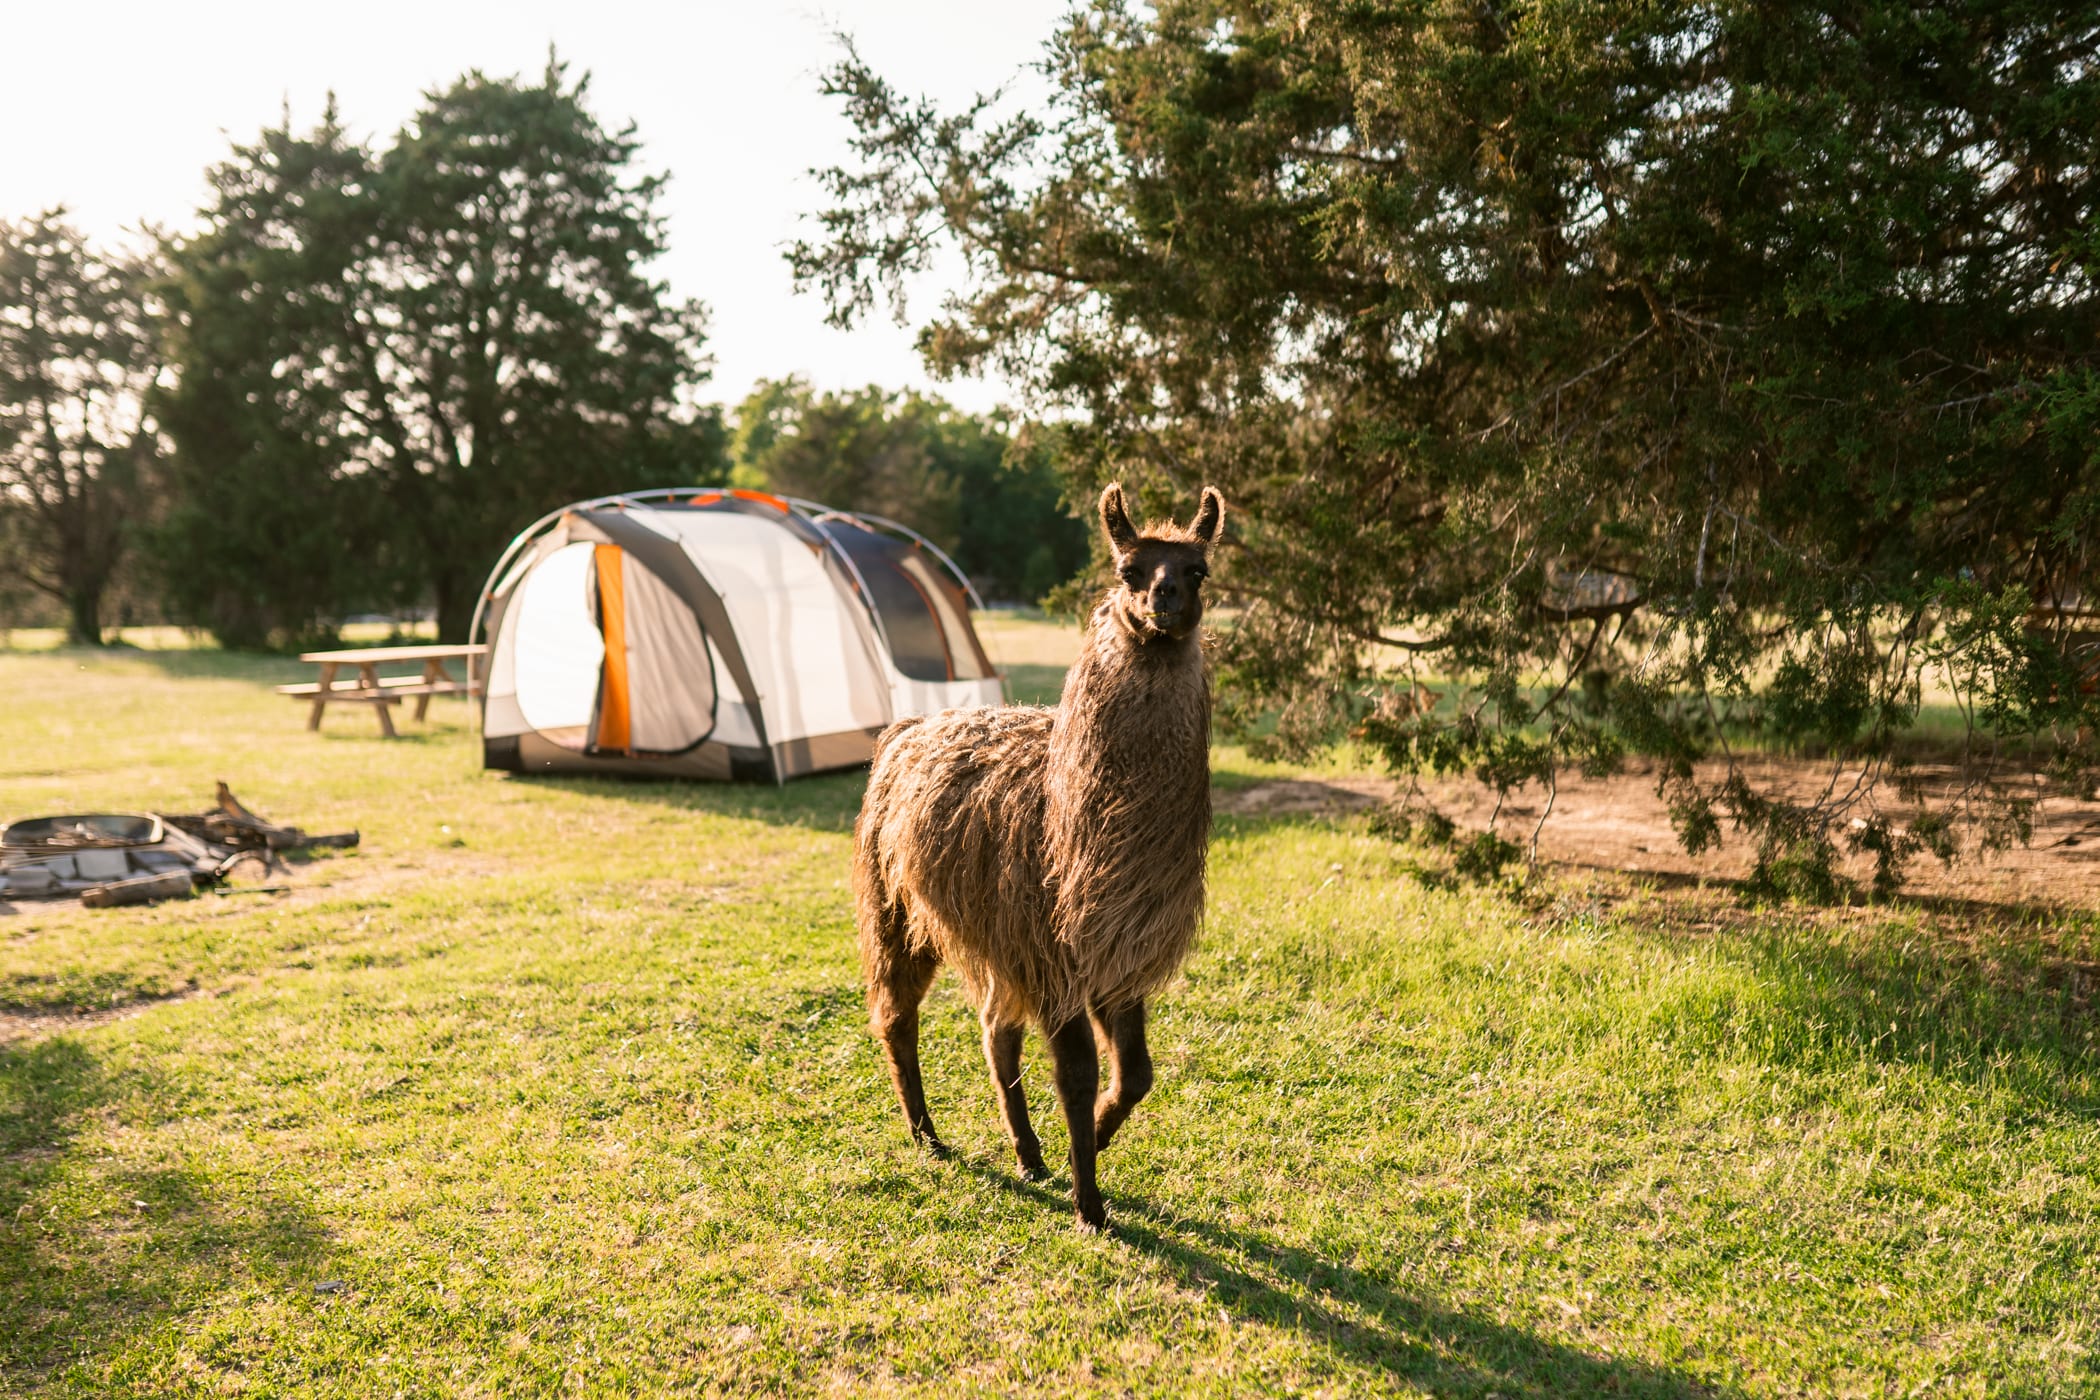 Llamas around camp 24/7 - A dream come true!